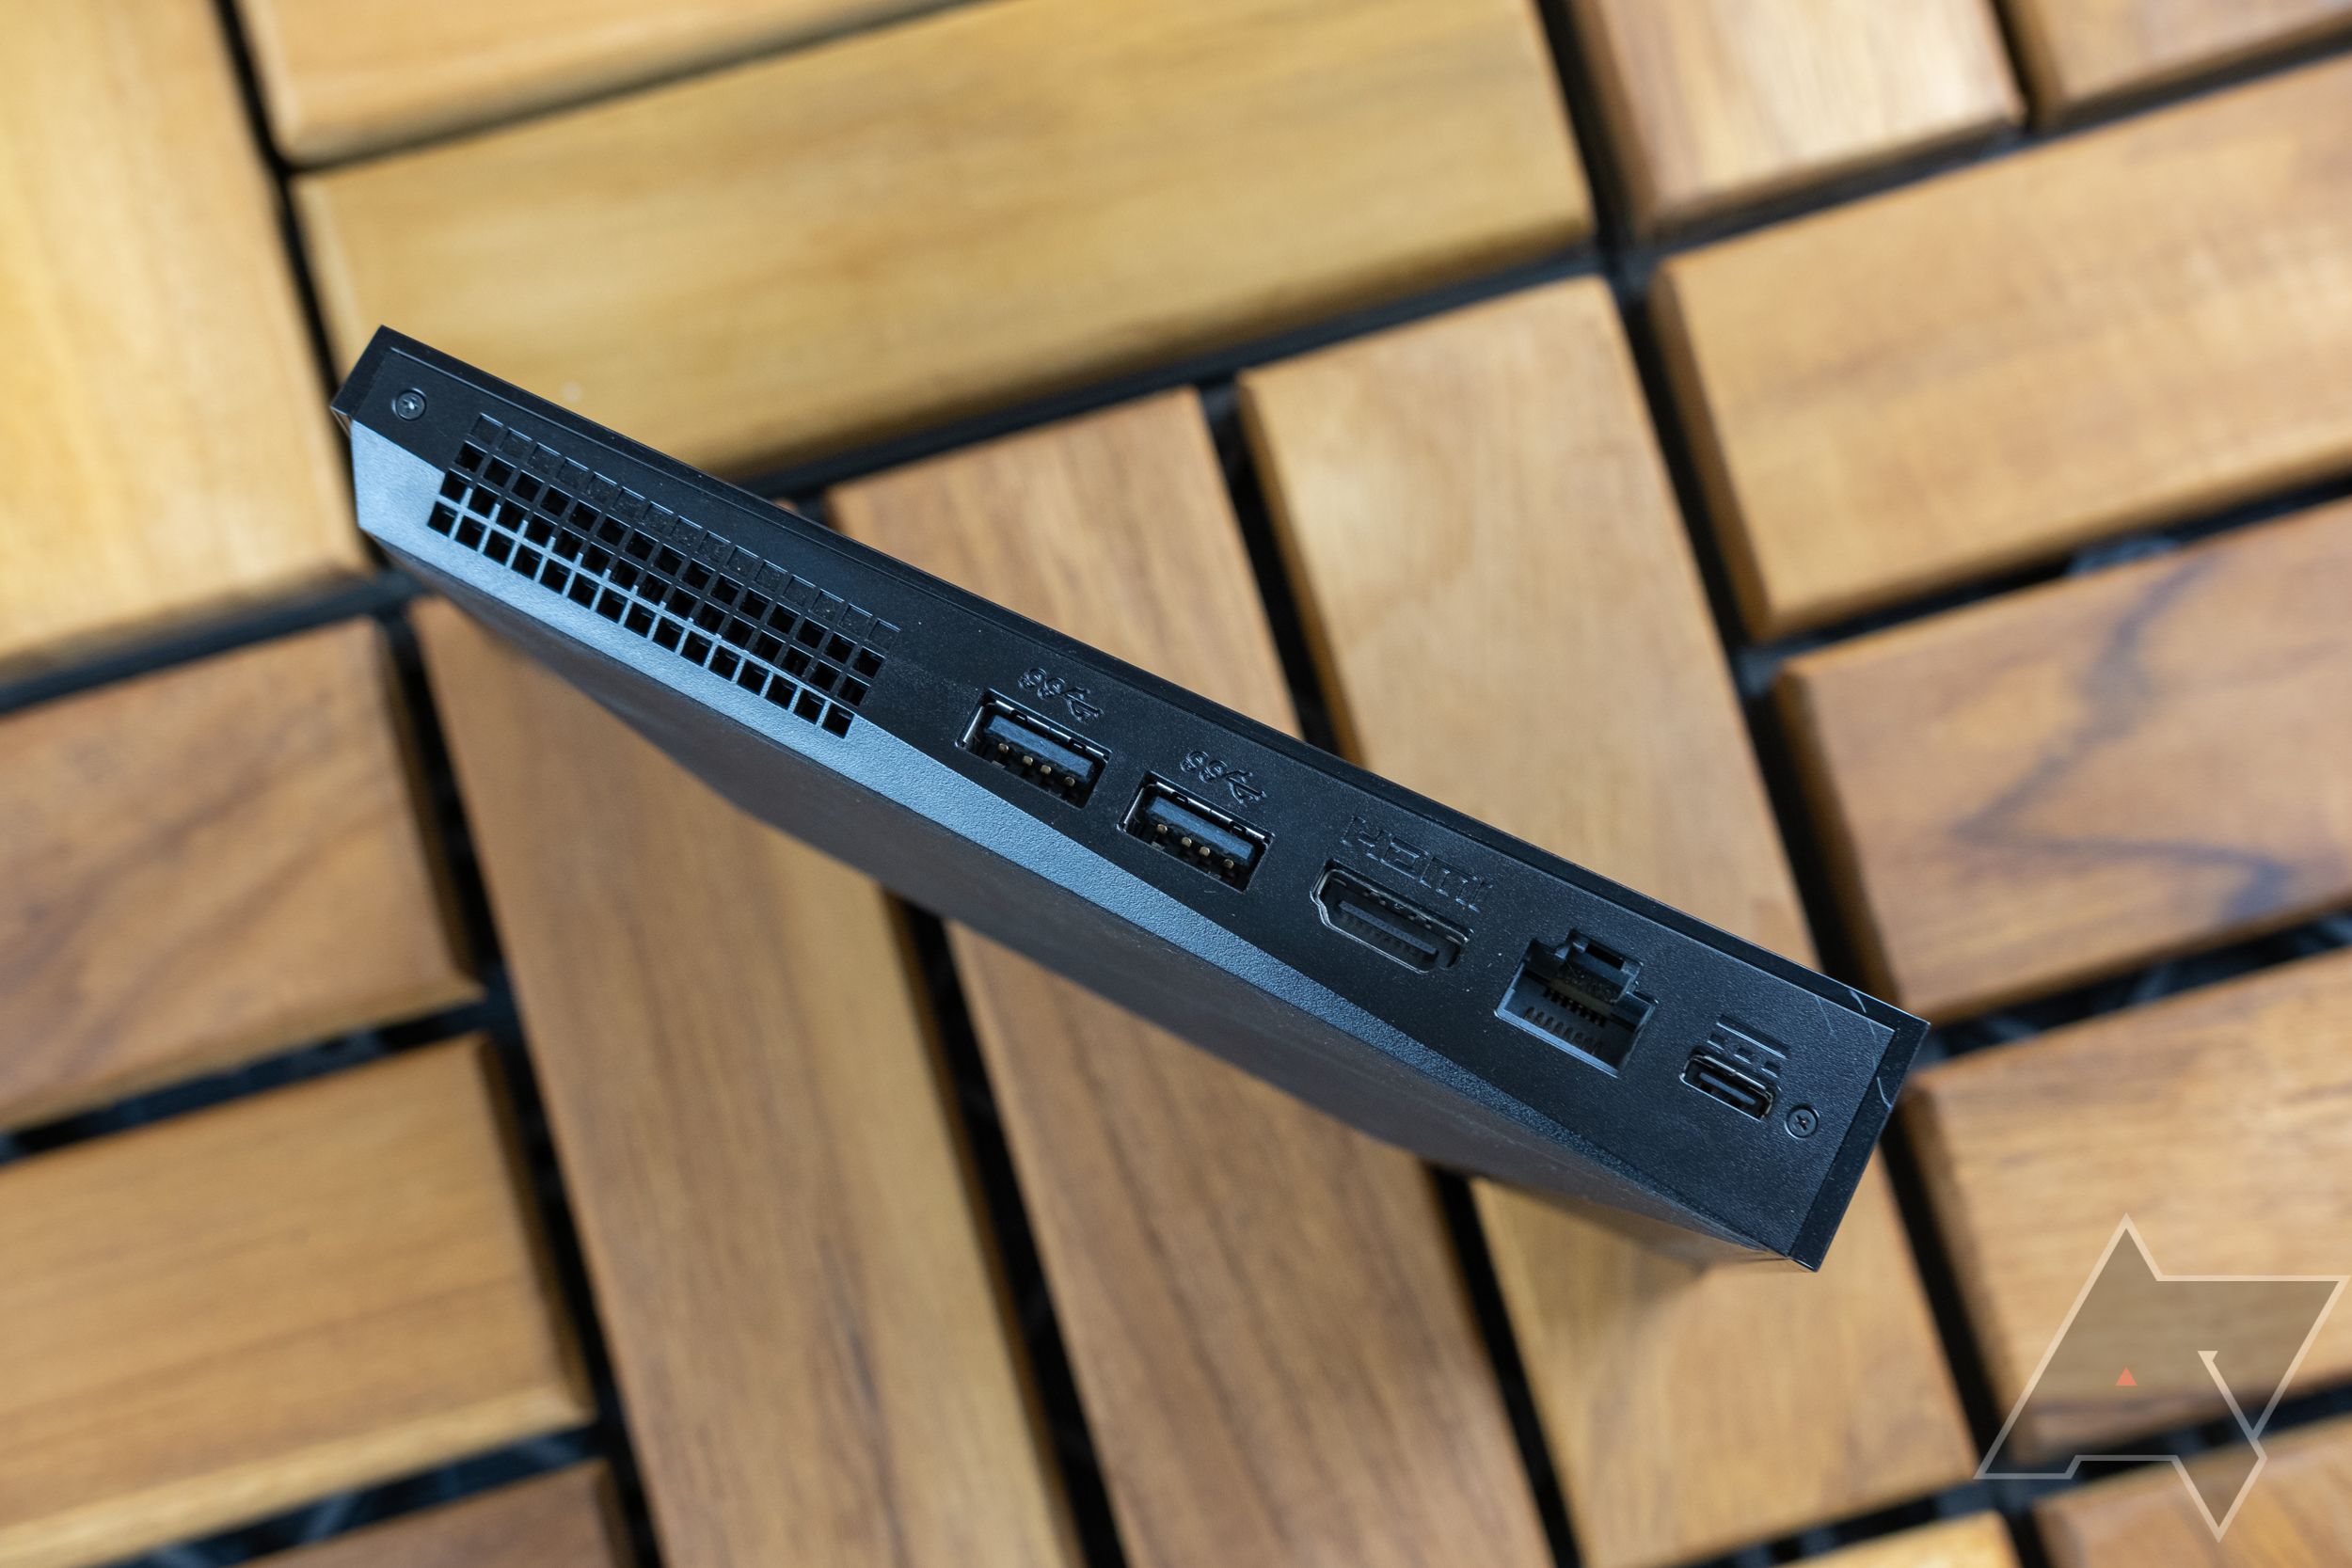 Uma imagem do dispositivo de streaming NVIDIA Shield mostrando todas as suas portas disponíveis em um fundo de superfície de madeira.